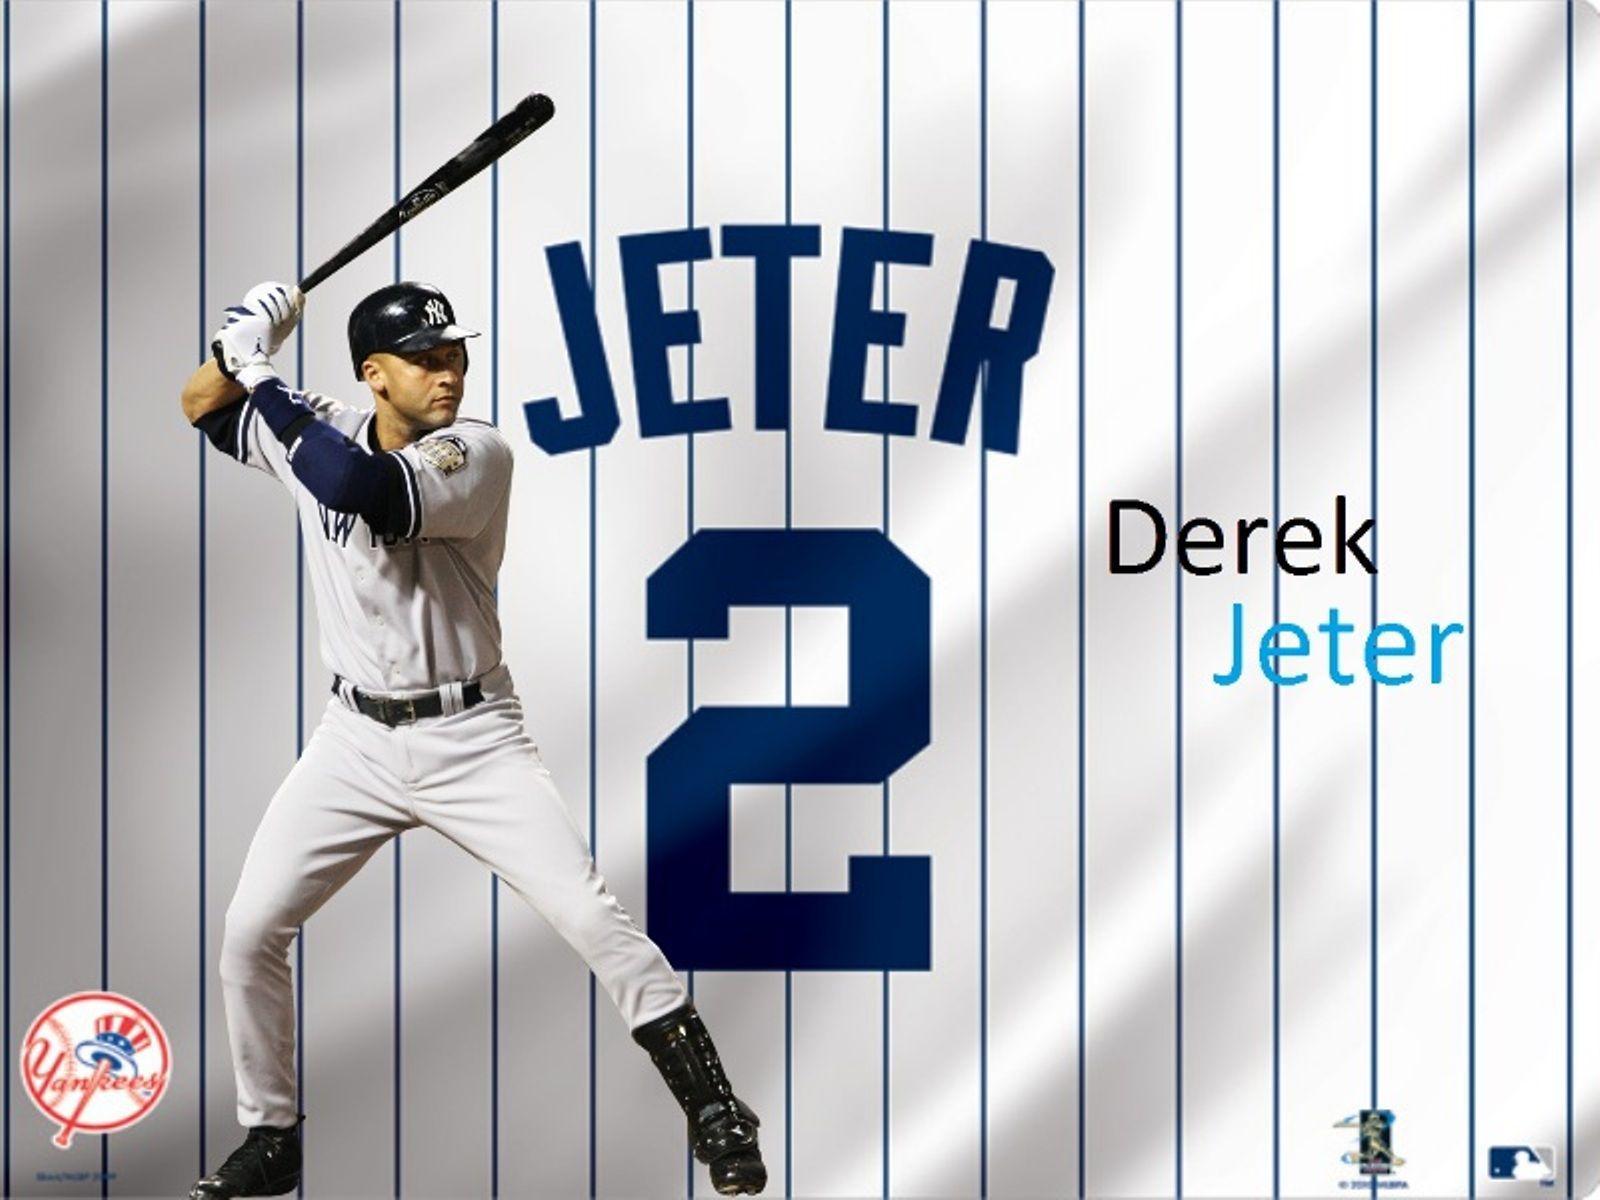 Derek Jeter Baseball Wallpaper. baseball. Baseball